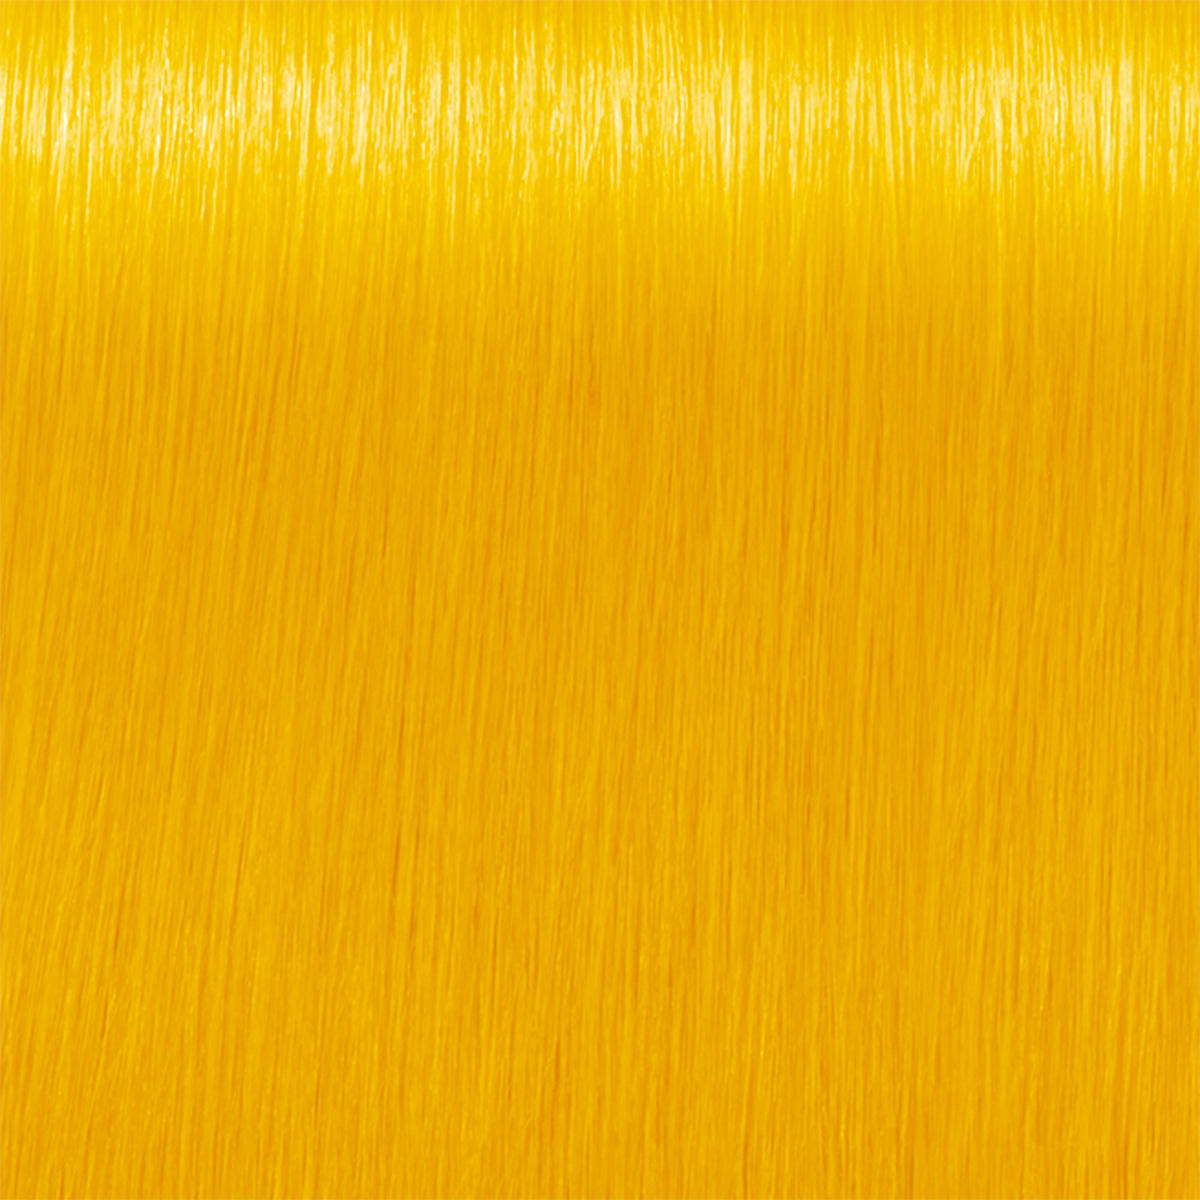 Indola CREA-BOLD Semi-Permanent Direct Dyes Giallo canarino 100 ml - 1